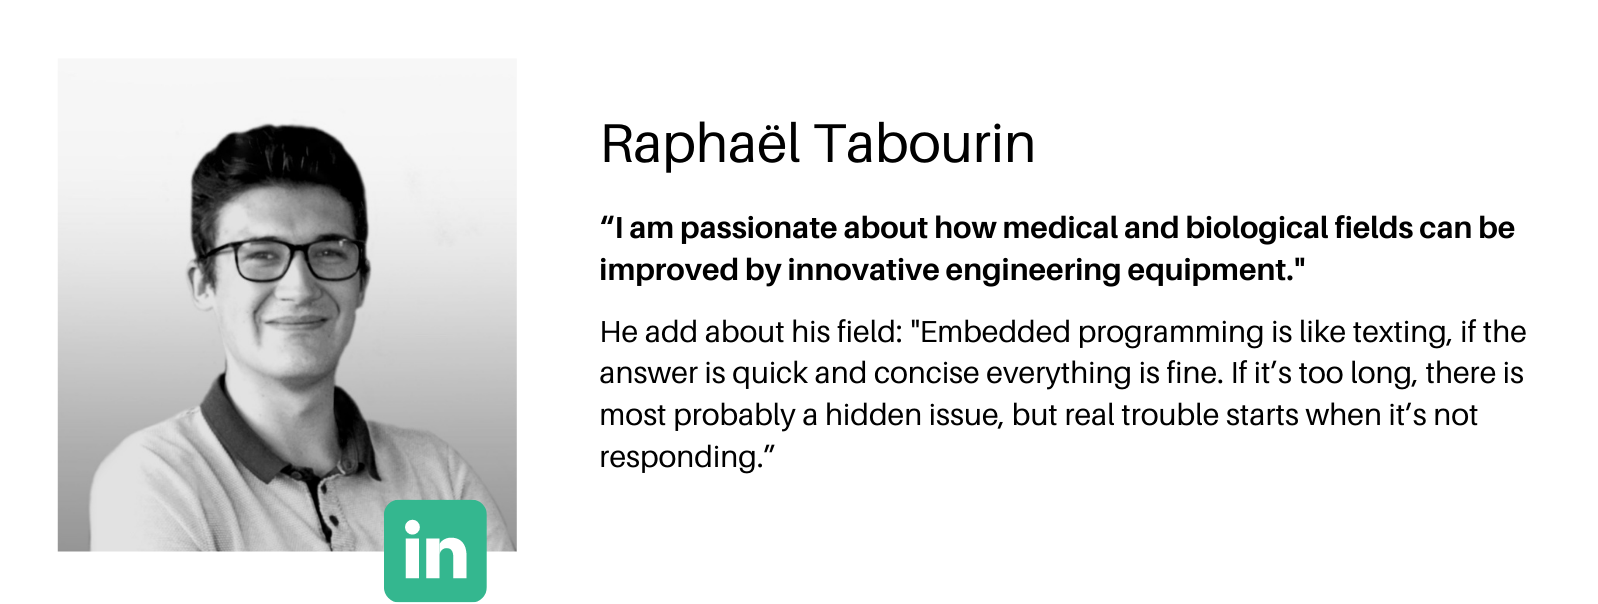 Meet Raphaël Tabourin